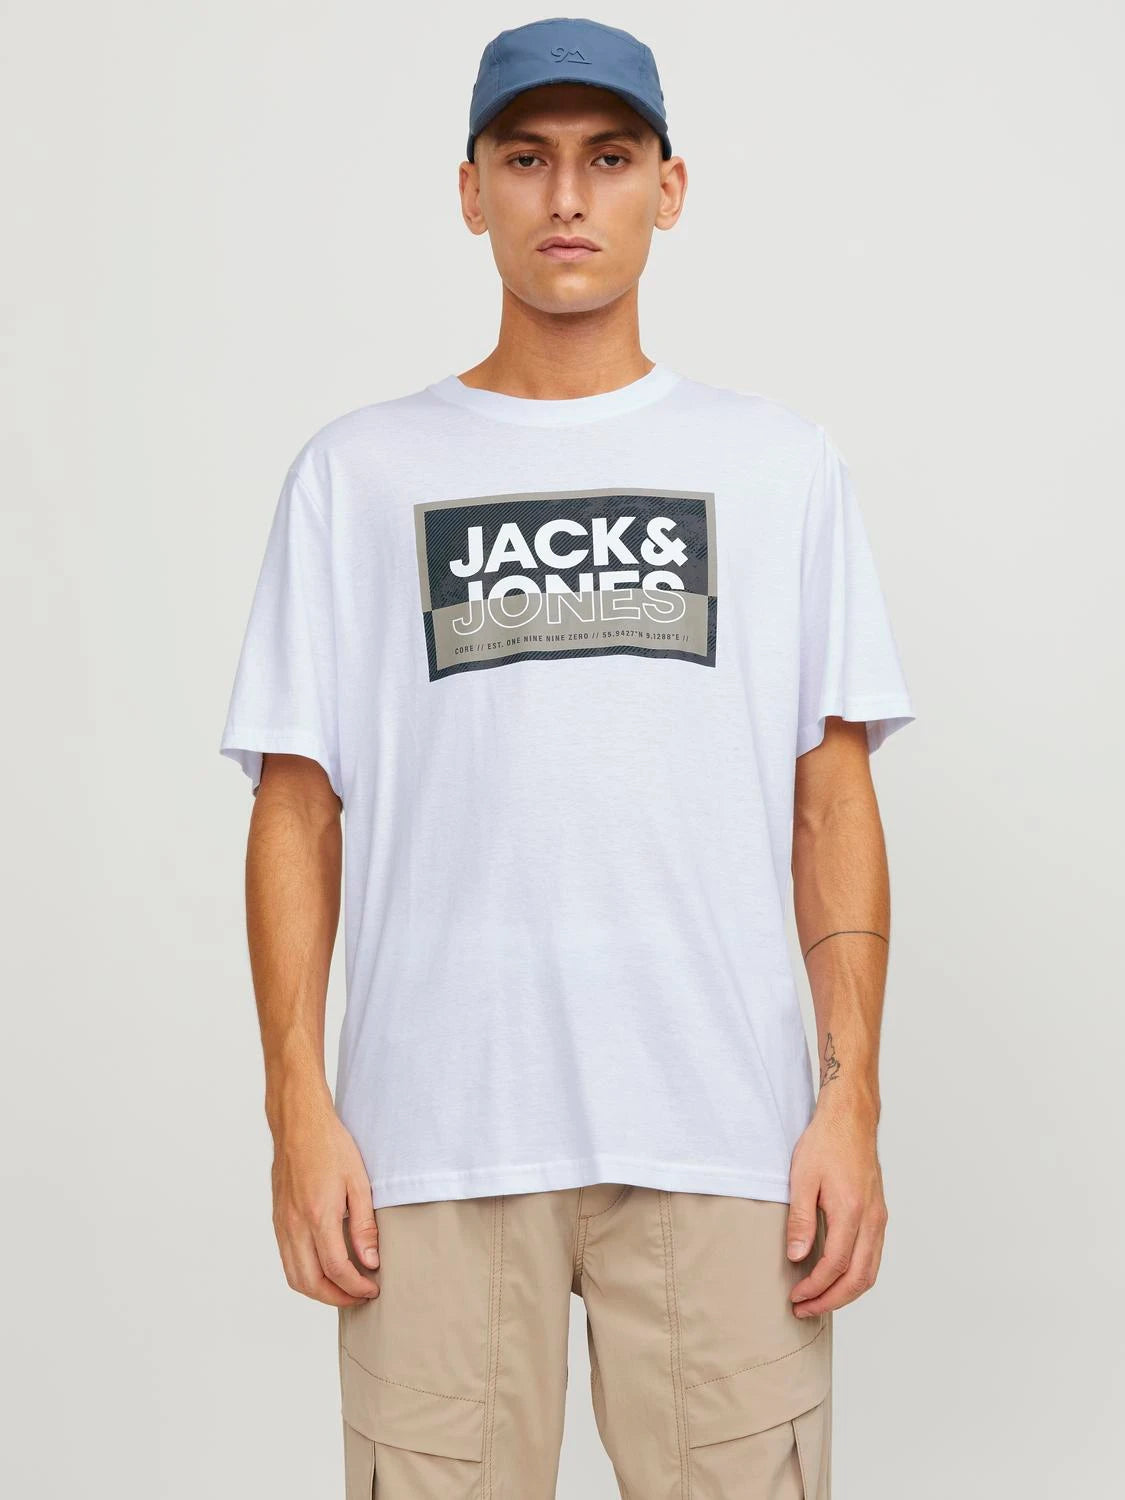 Jack&Jones Men's white t-shirt